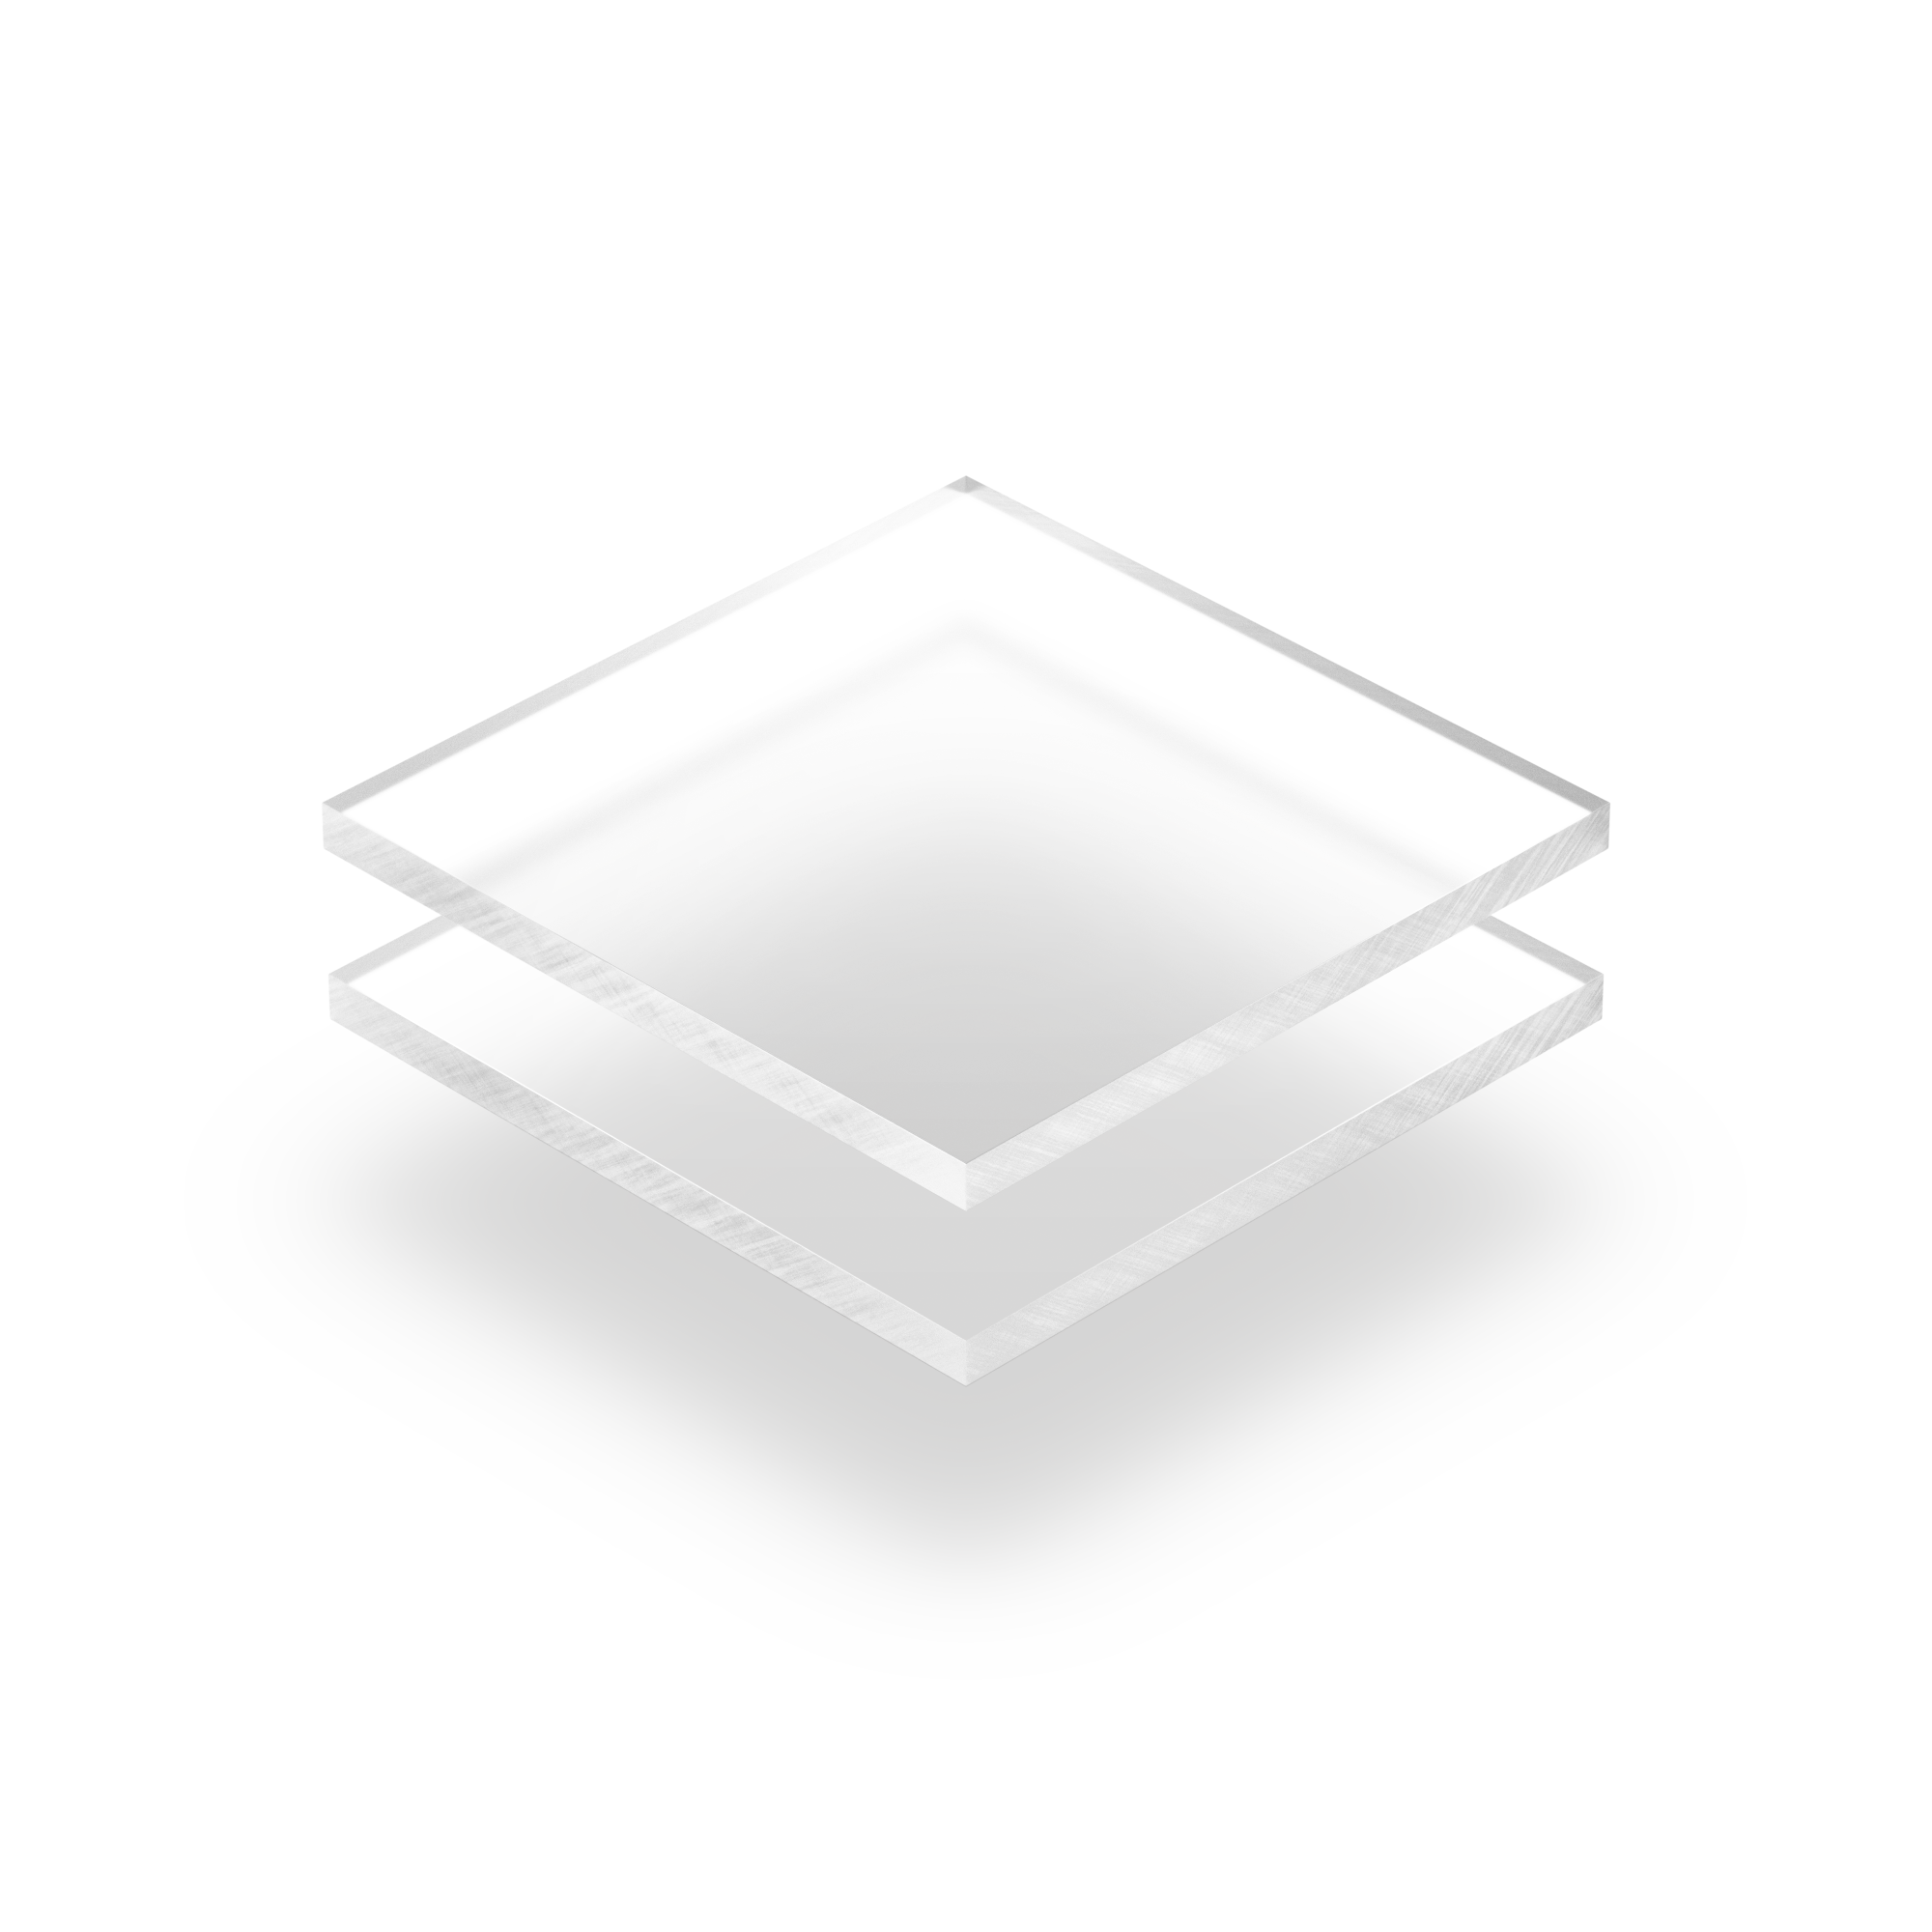 Feuille acrylique transparente - Achetez un produit en feuille